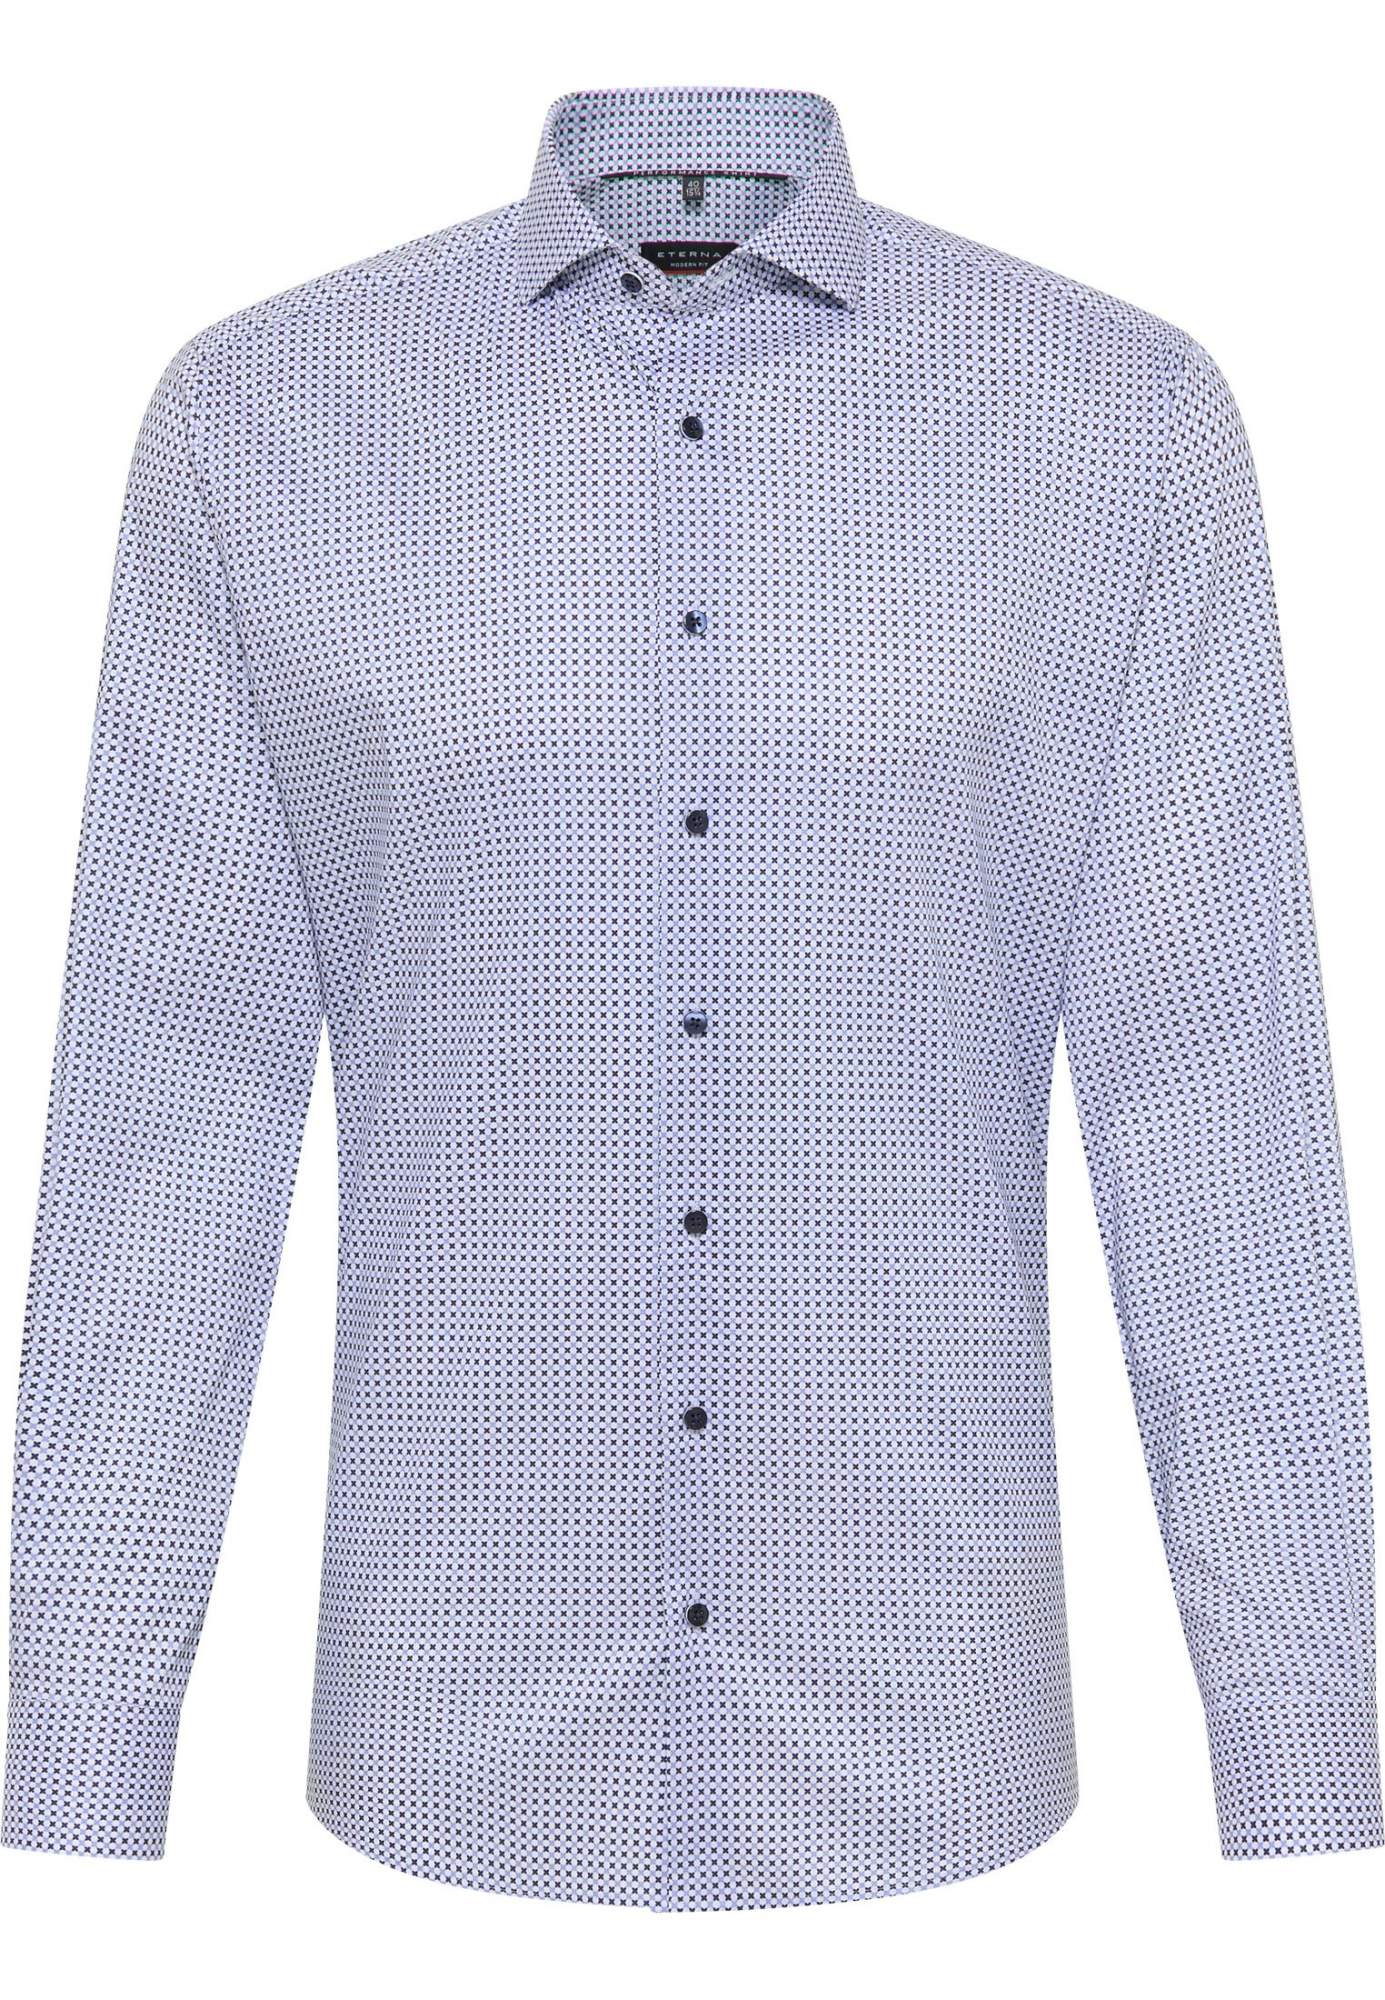 Рубашка мужская ETERNA 4176-17-X17V голубая 41